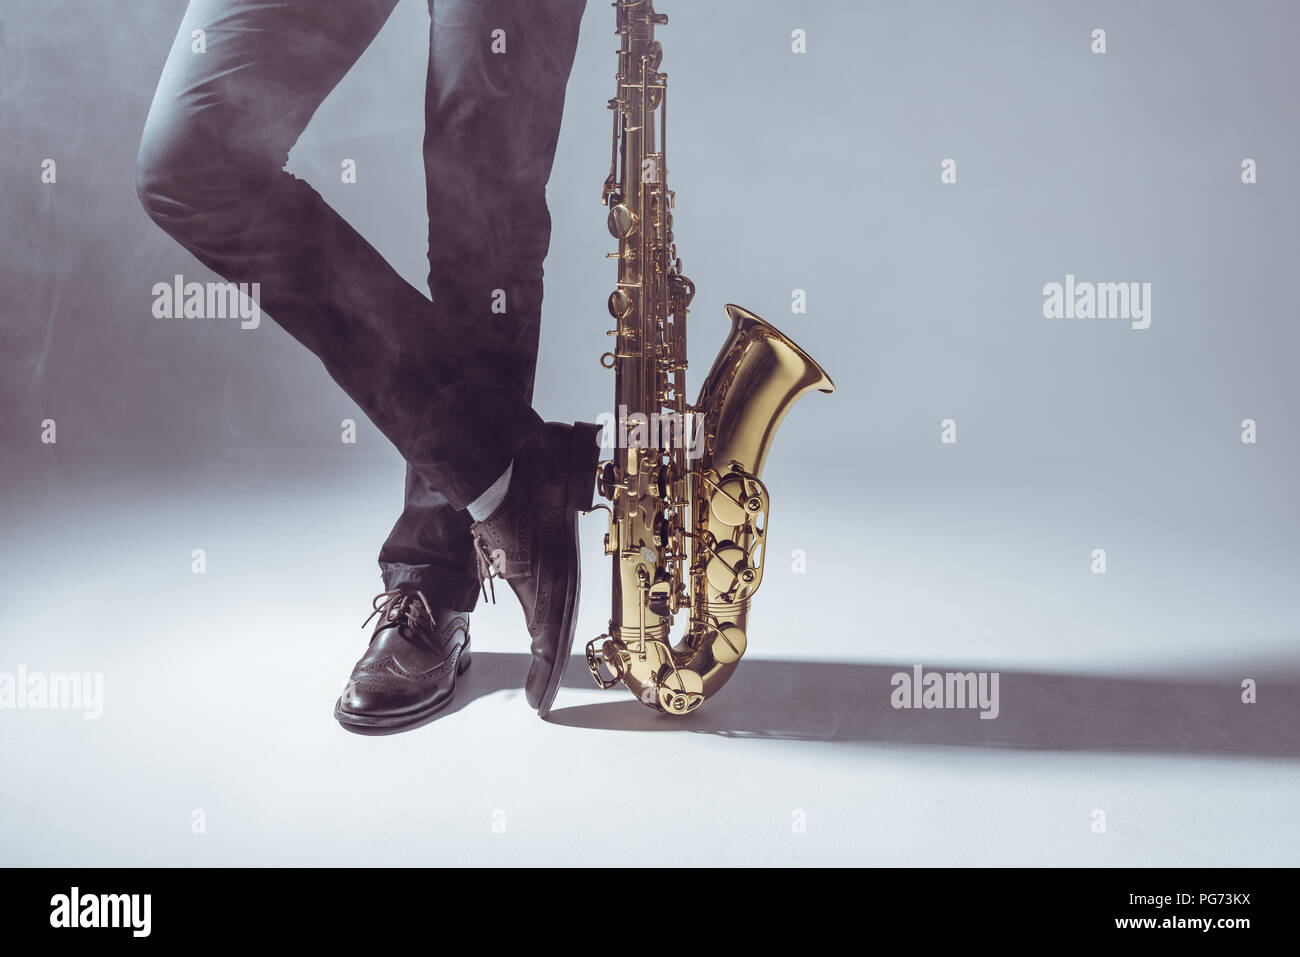 La section basse de musicien professionnel debout avec saxophone dans la fumée sur gray Banque D'Images